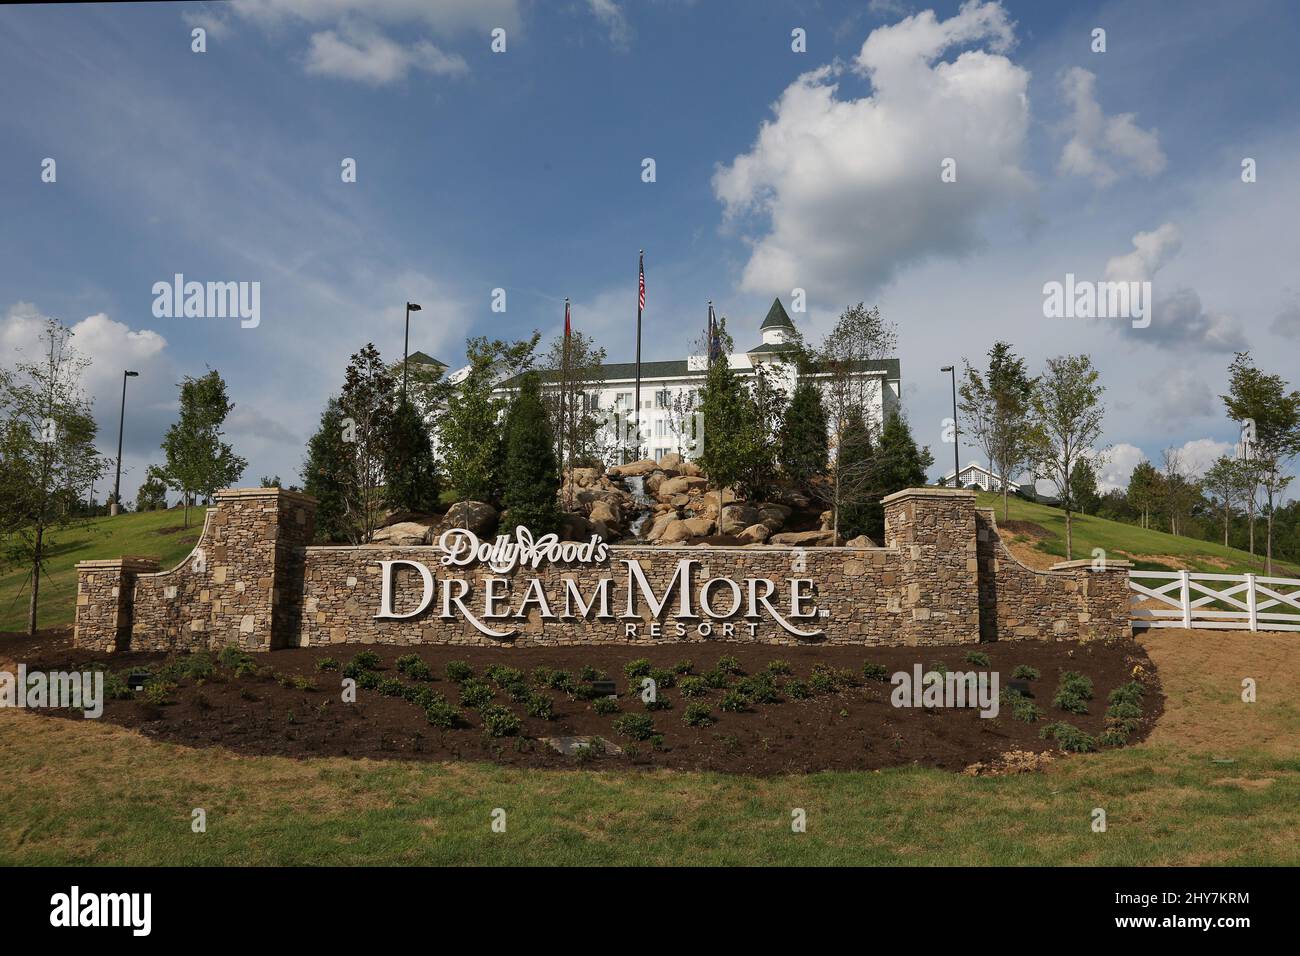 Vistas generales del complejo DreamMore de Dollywood Foto de stock